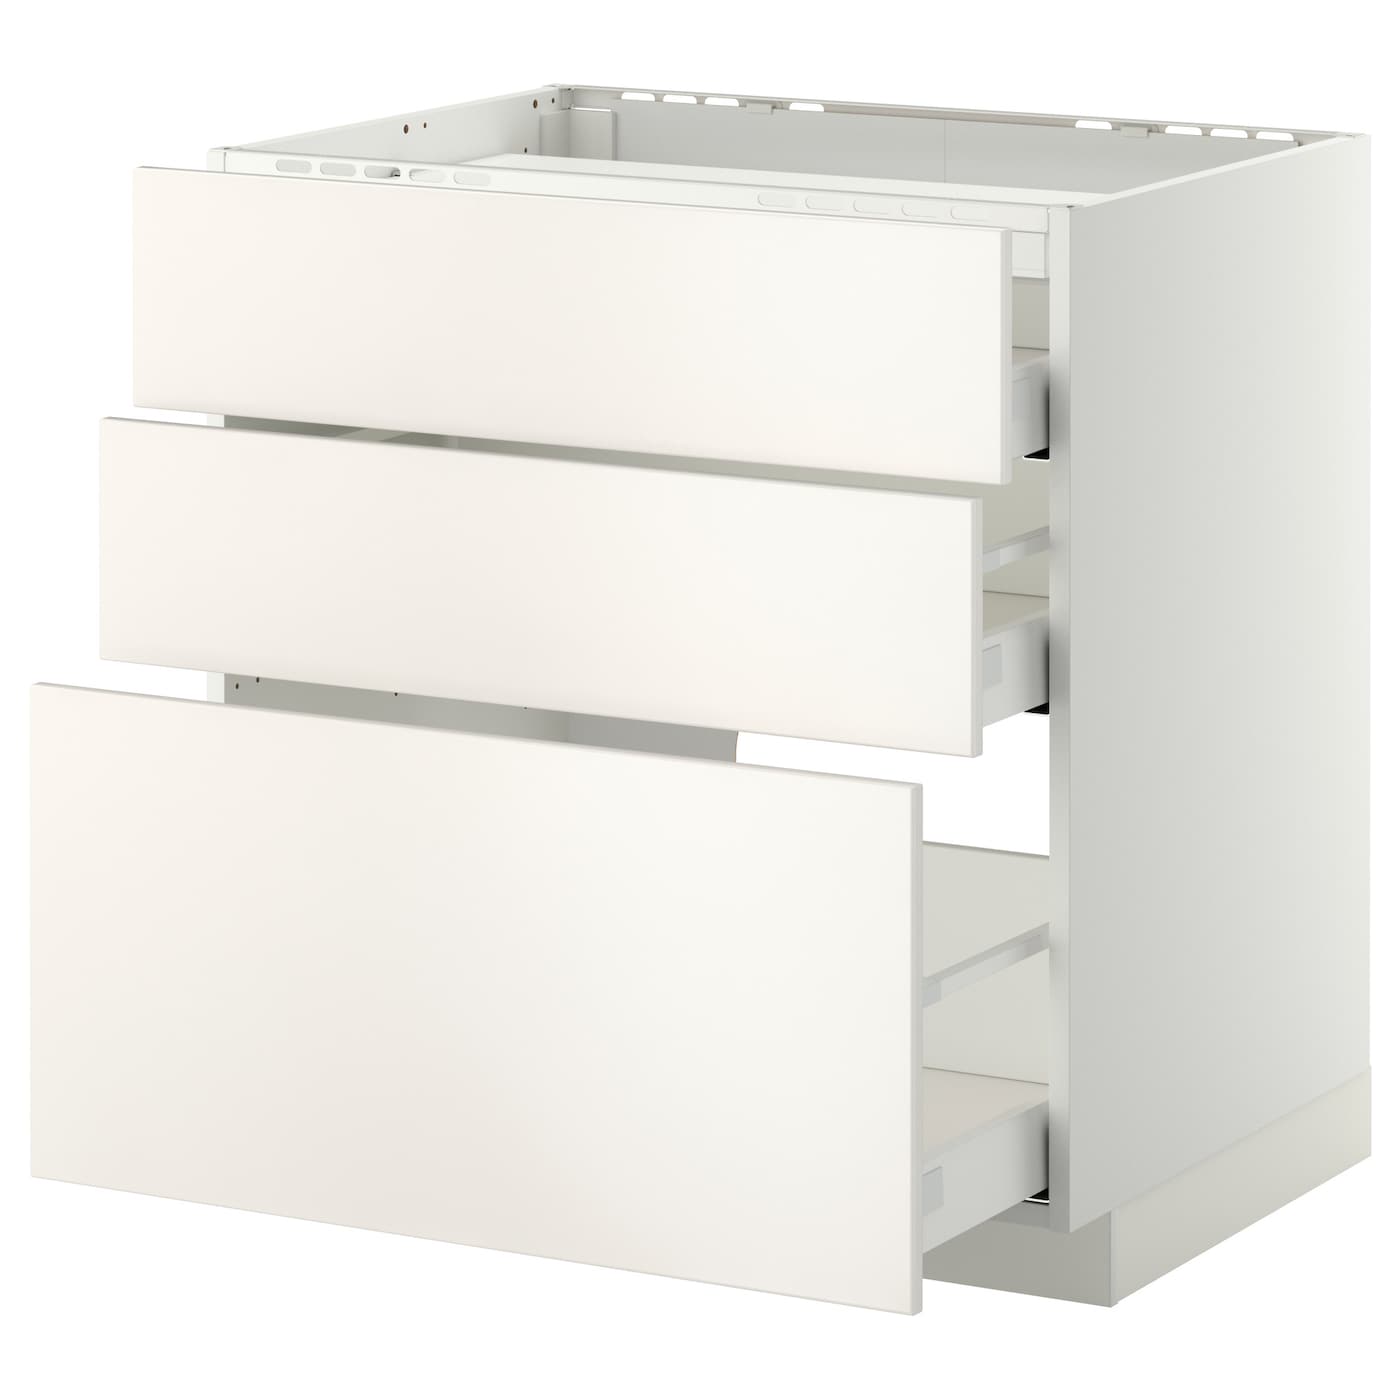 Напольный шкаф  - IKEA METOD MAXIMERA, 88x61,6x80см, белый, МЕТОД МАКСИМЕРА ИКЕА